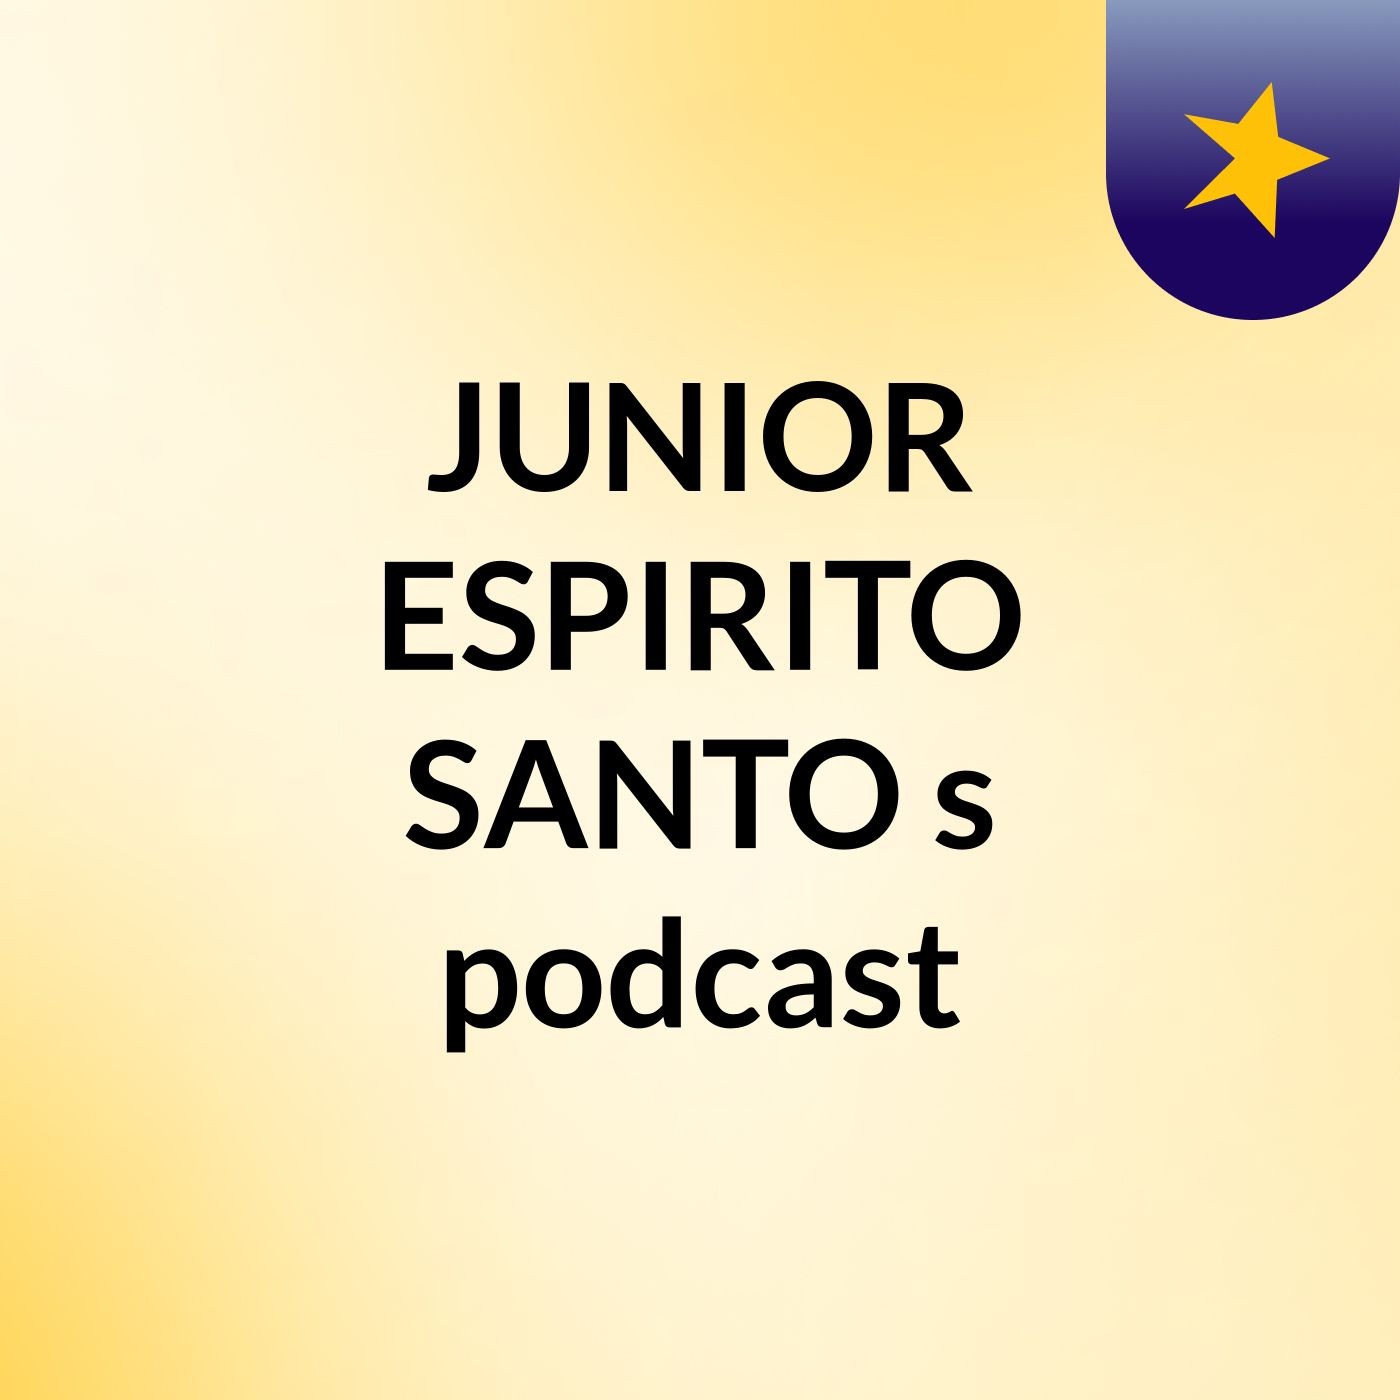 JUNIOR ESPIRITO SANTO's podcast